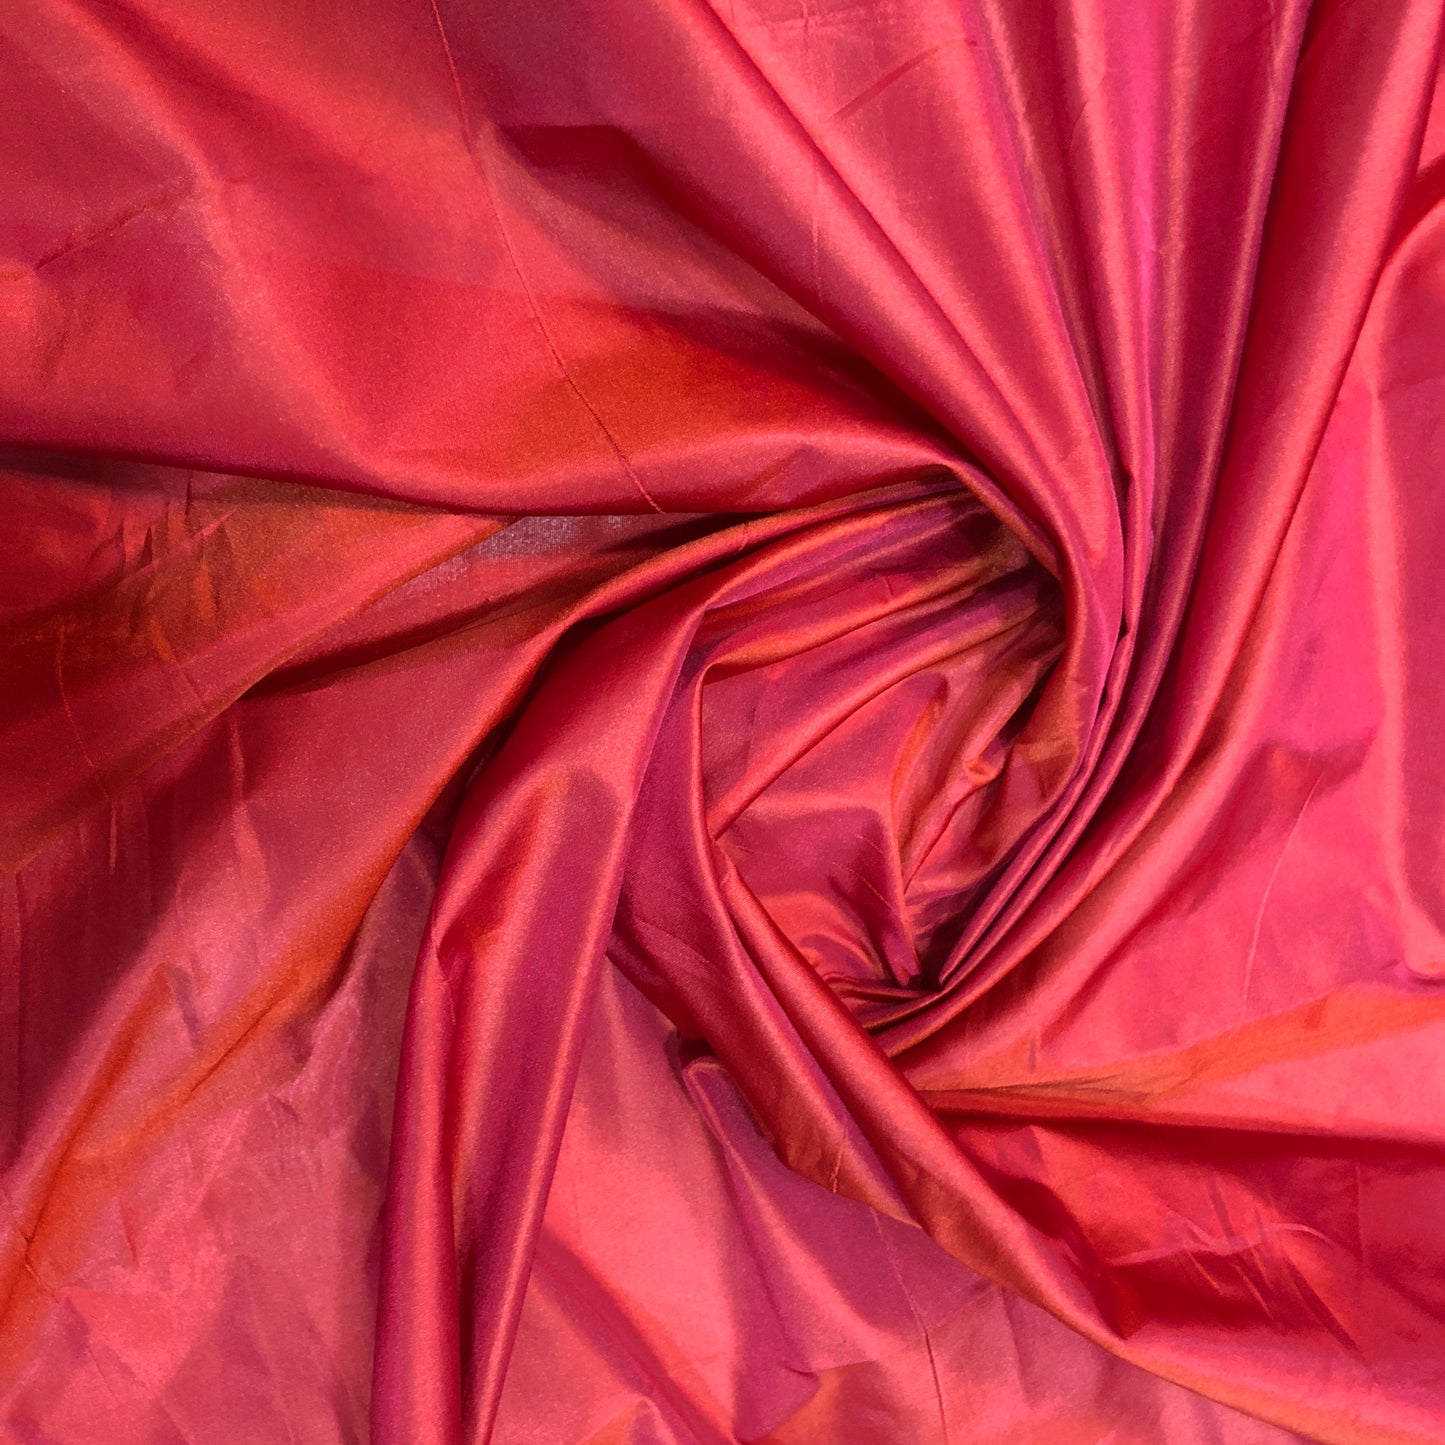 Red Chennai Silk With Delicate Orange Thread work